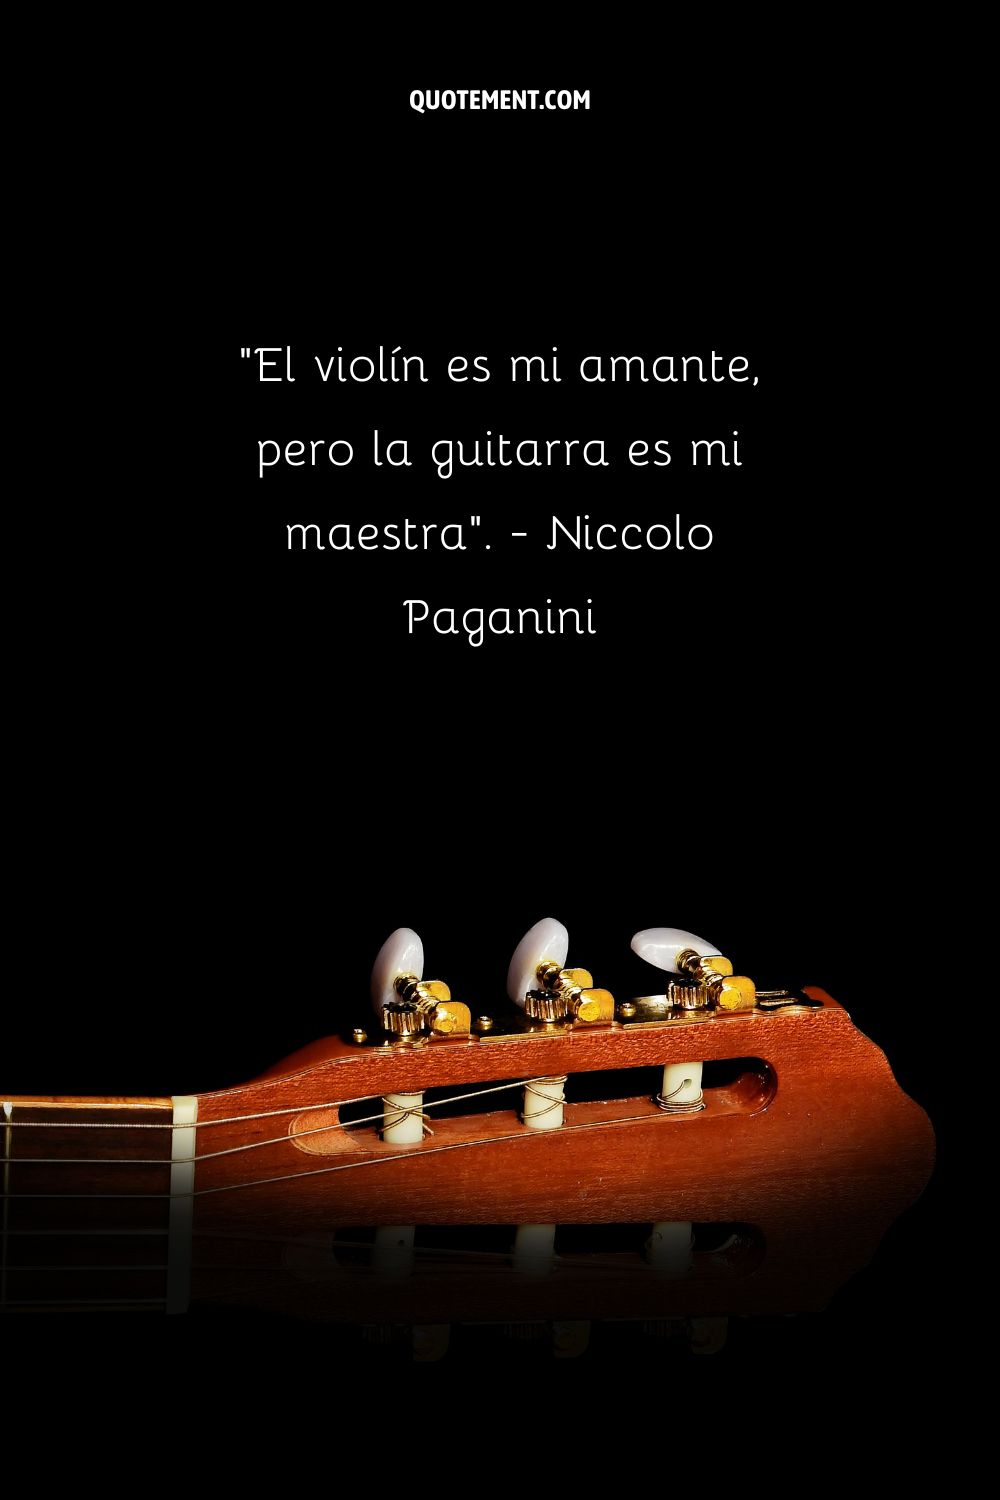 El violín es mi amante, pero la guitarra es mi maestra.